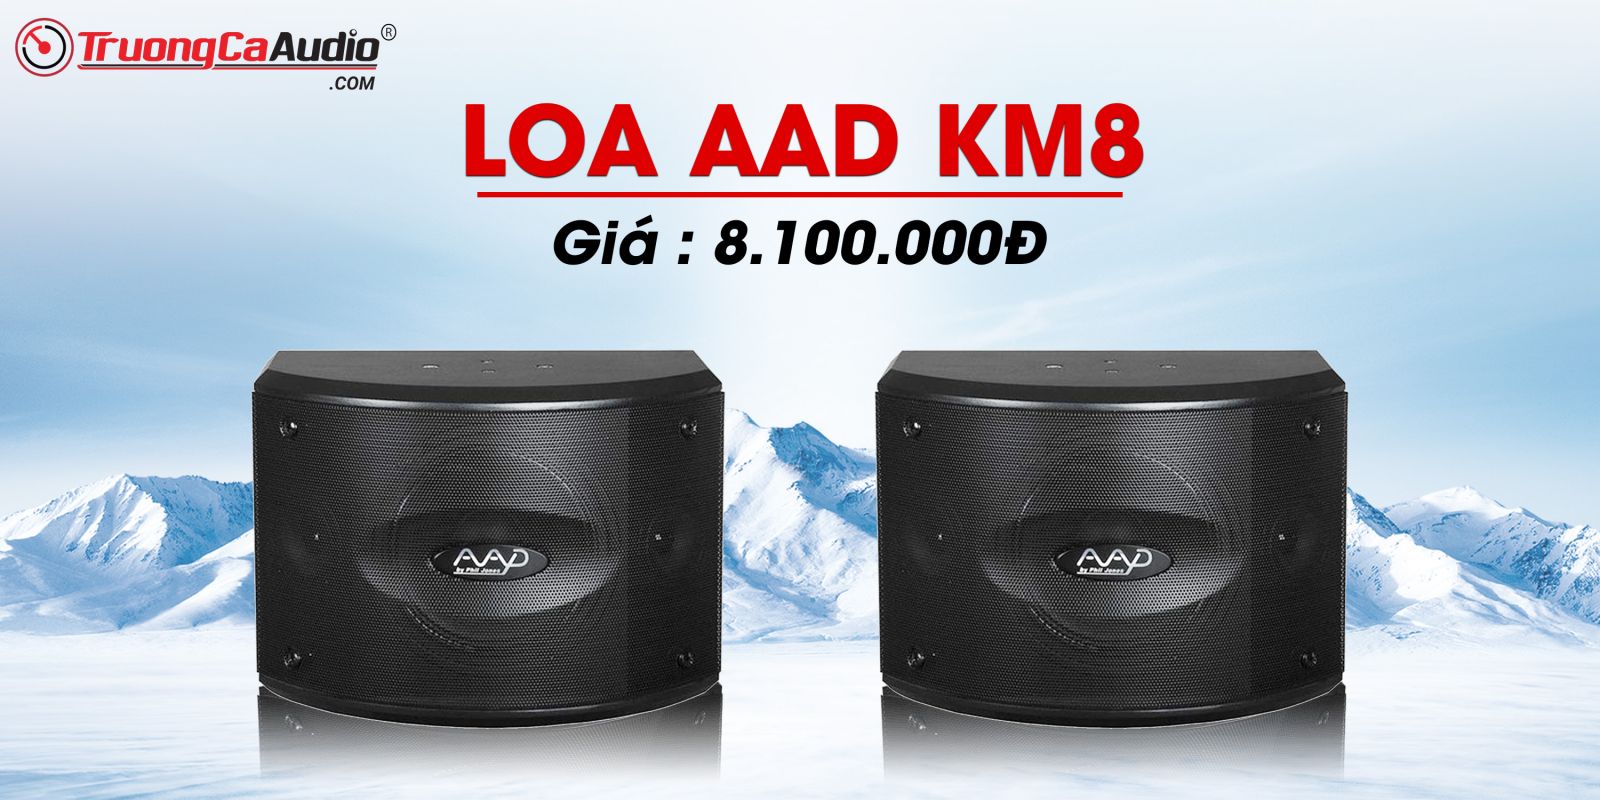 Loa AAD KM8 là dòng loa karaoke chuyên nghiệp cao cấp chuyên dùng cho dàn karaoke gì đình 